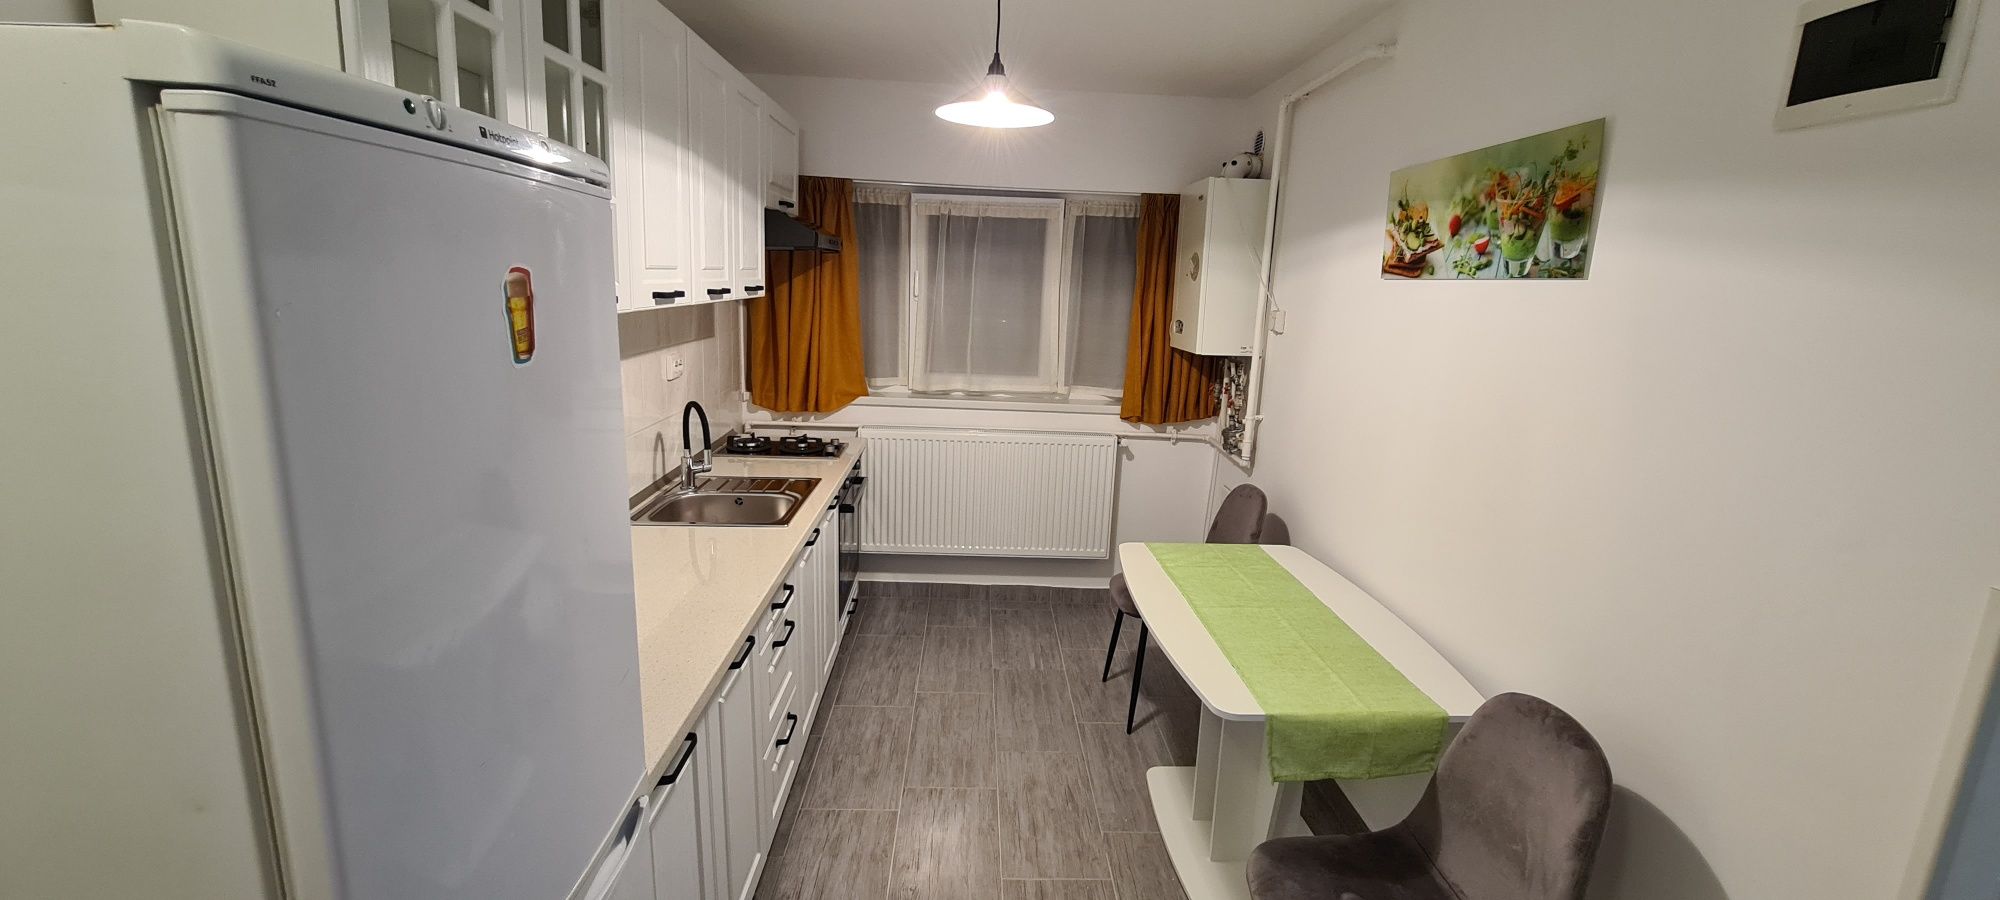 Apartament de 1 cameră cu grădină în Mănăștur, Cluj-Napoca